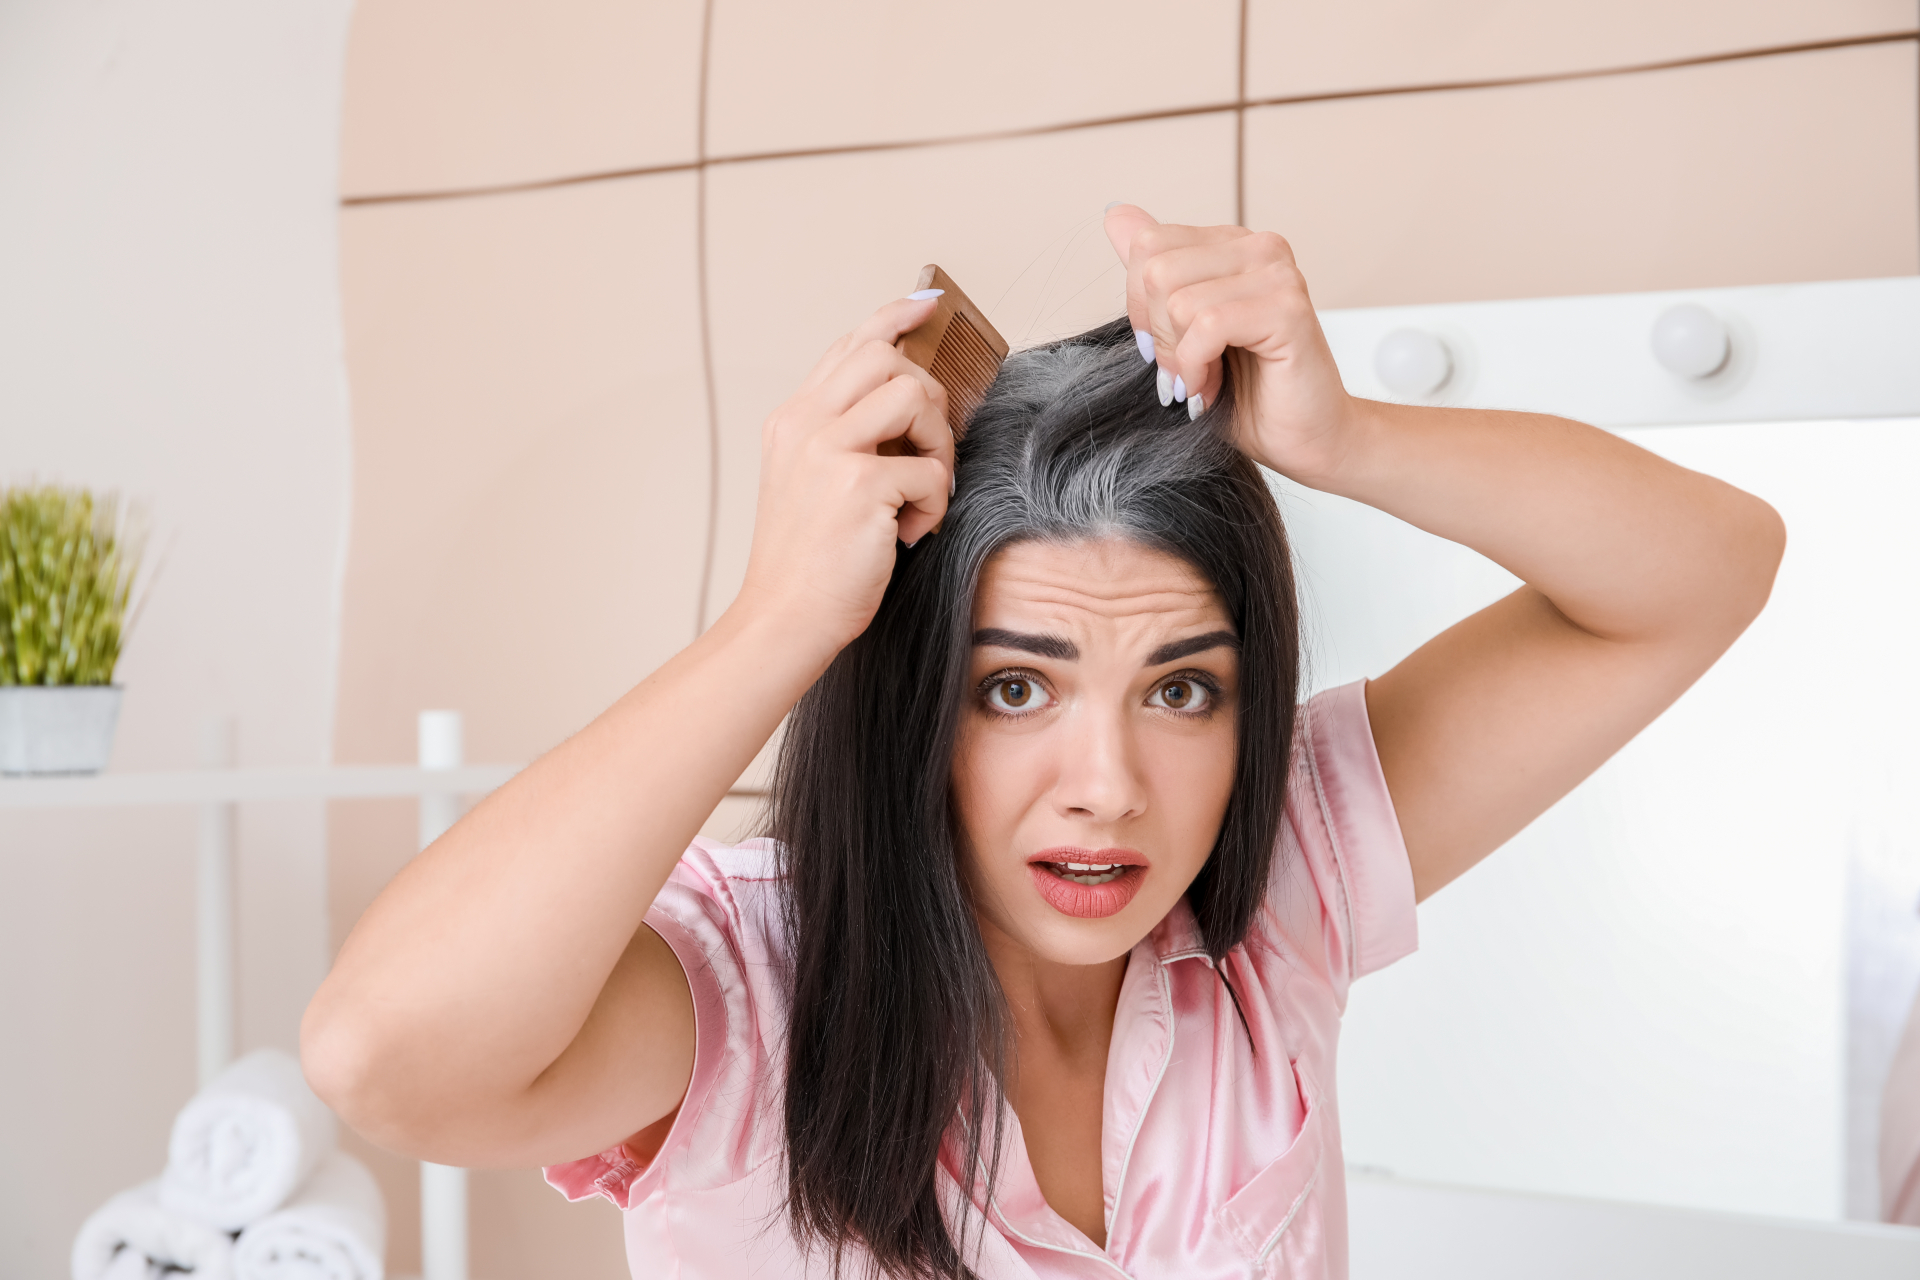 Хитри женски трикове за скриване на сивите коси